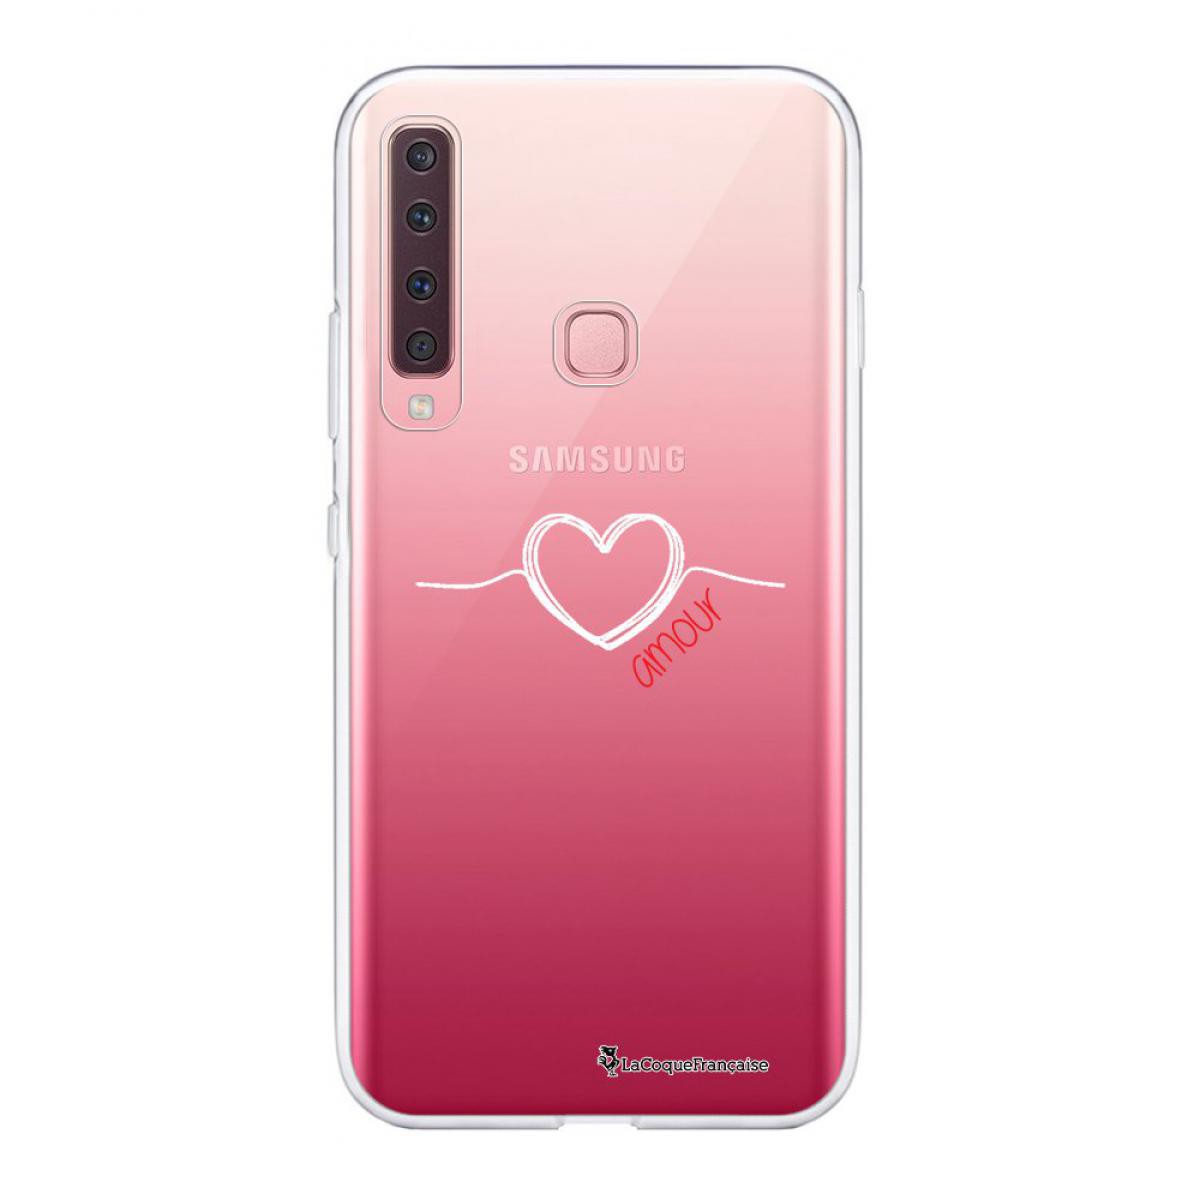 La Coque Francaise - Coque Samsung Galaxy A9 2018 souple transparente Coeur Blanc Amour Motif Ecriture Tendance La Coque Francaise - Coque, étui smartphone